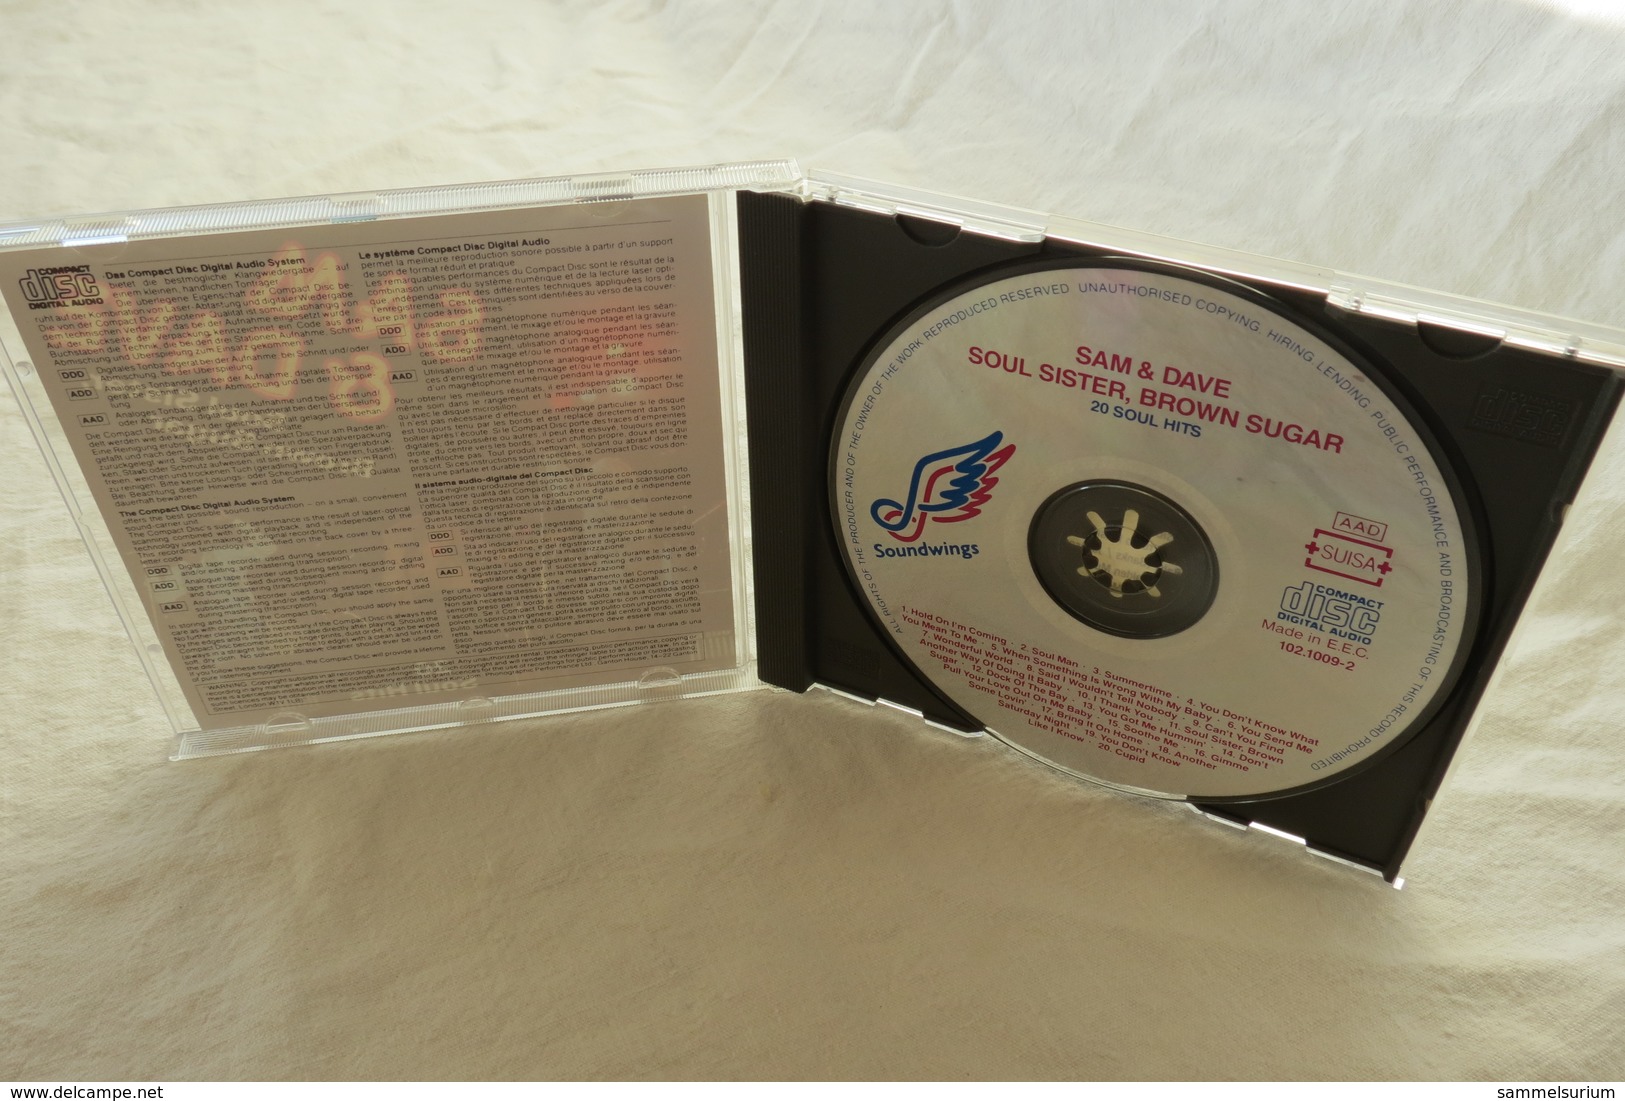 CD "Sam & Dave" Soul Sister, Brown Sugar, 20 Soul Hits - Soul - R&B